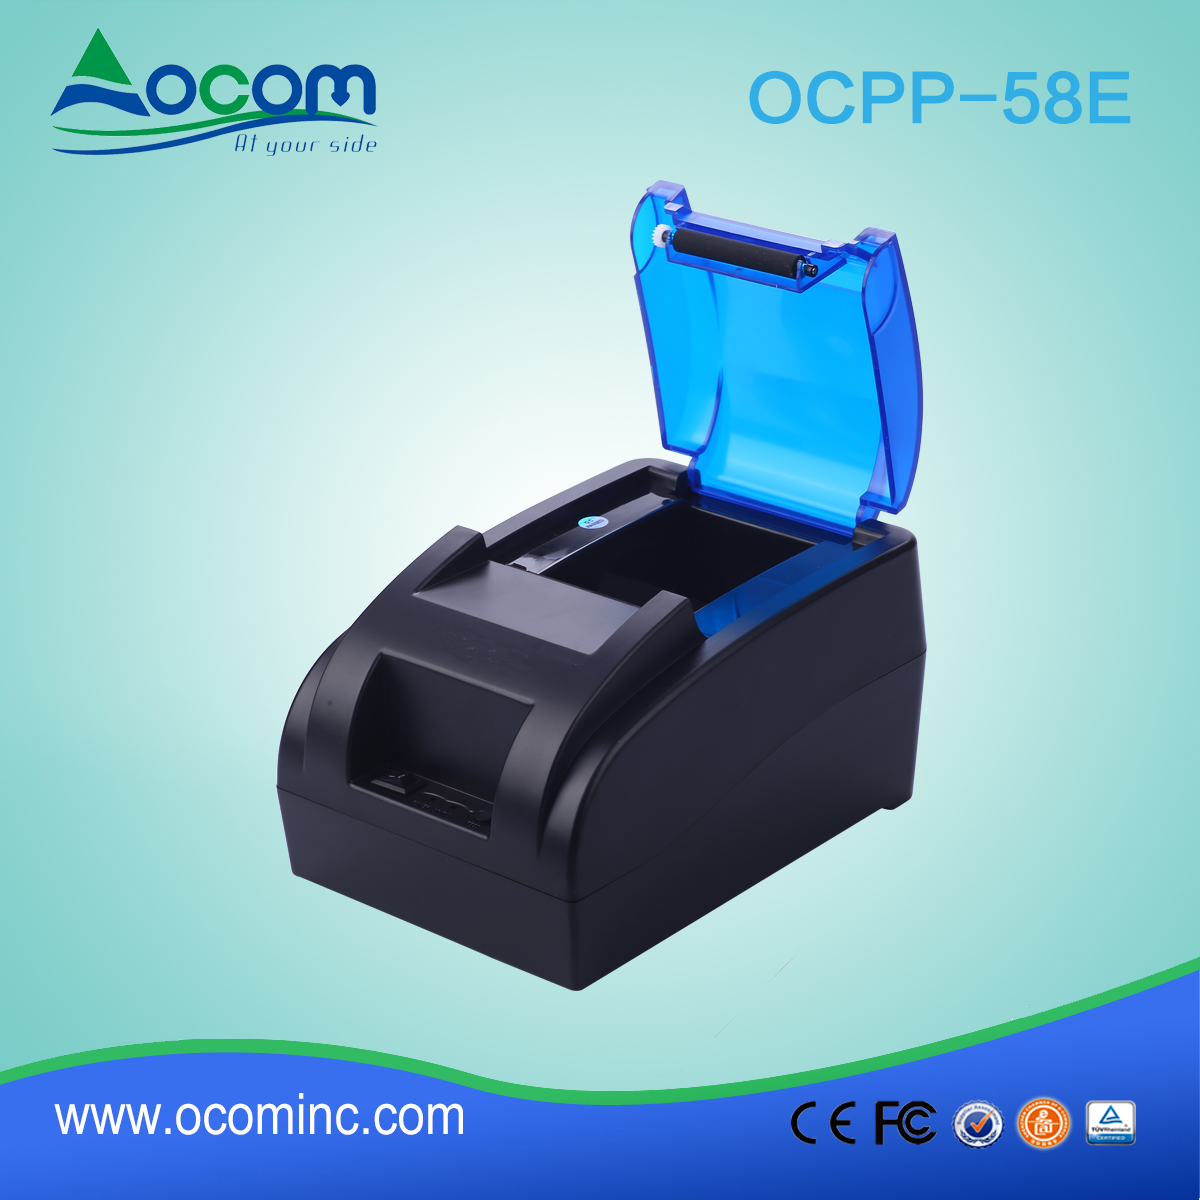 Imprimante de reçus thermiques de 58 mm avec adaptateur secteur intégré OCPP-58E-BT